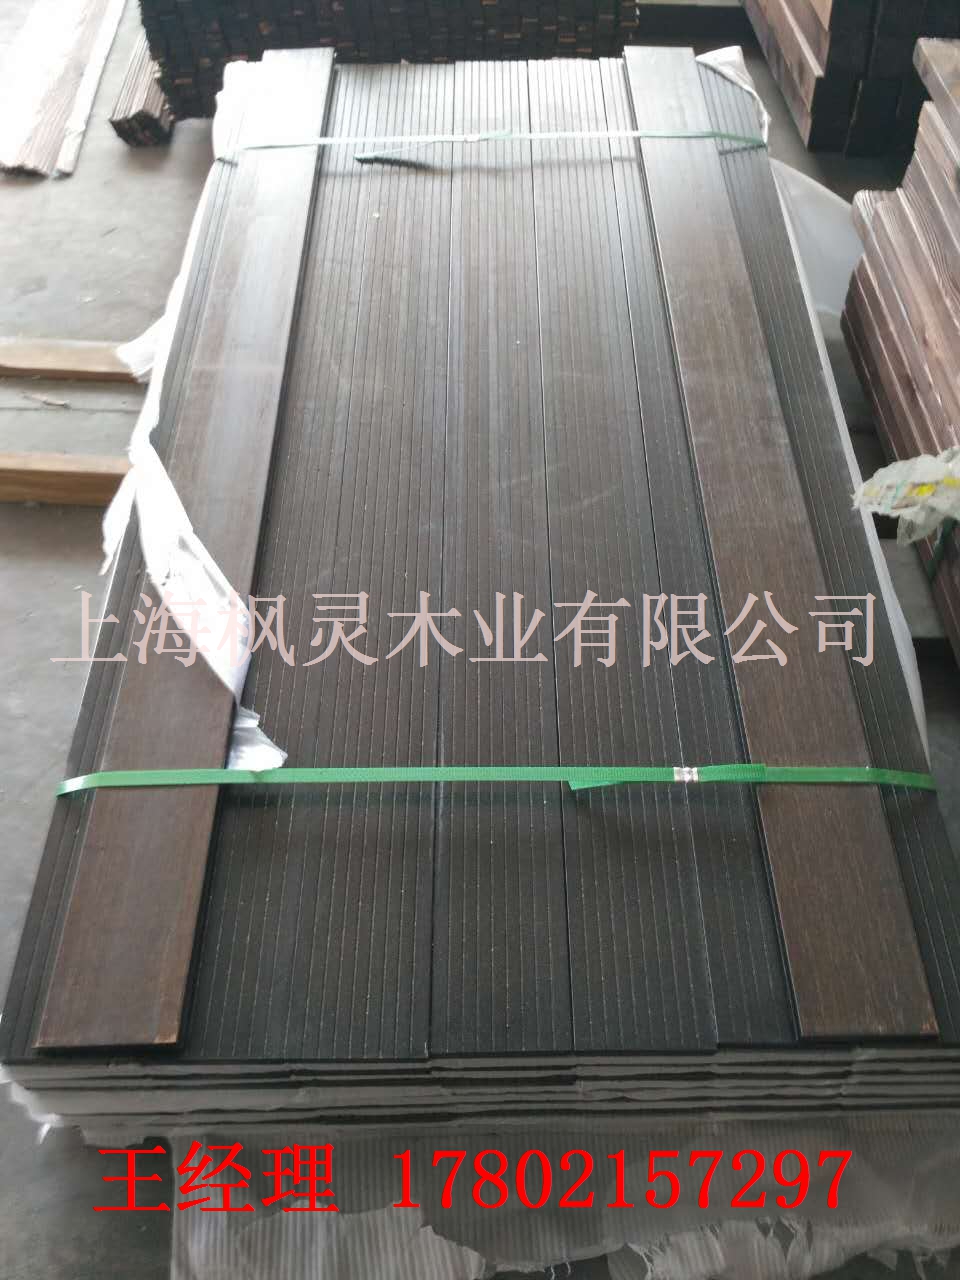 上海上海户外高耐重竹地板竹木地板